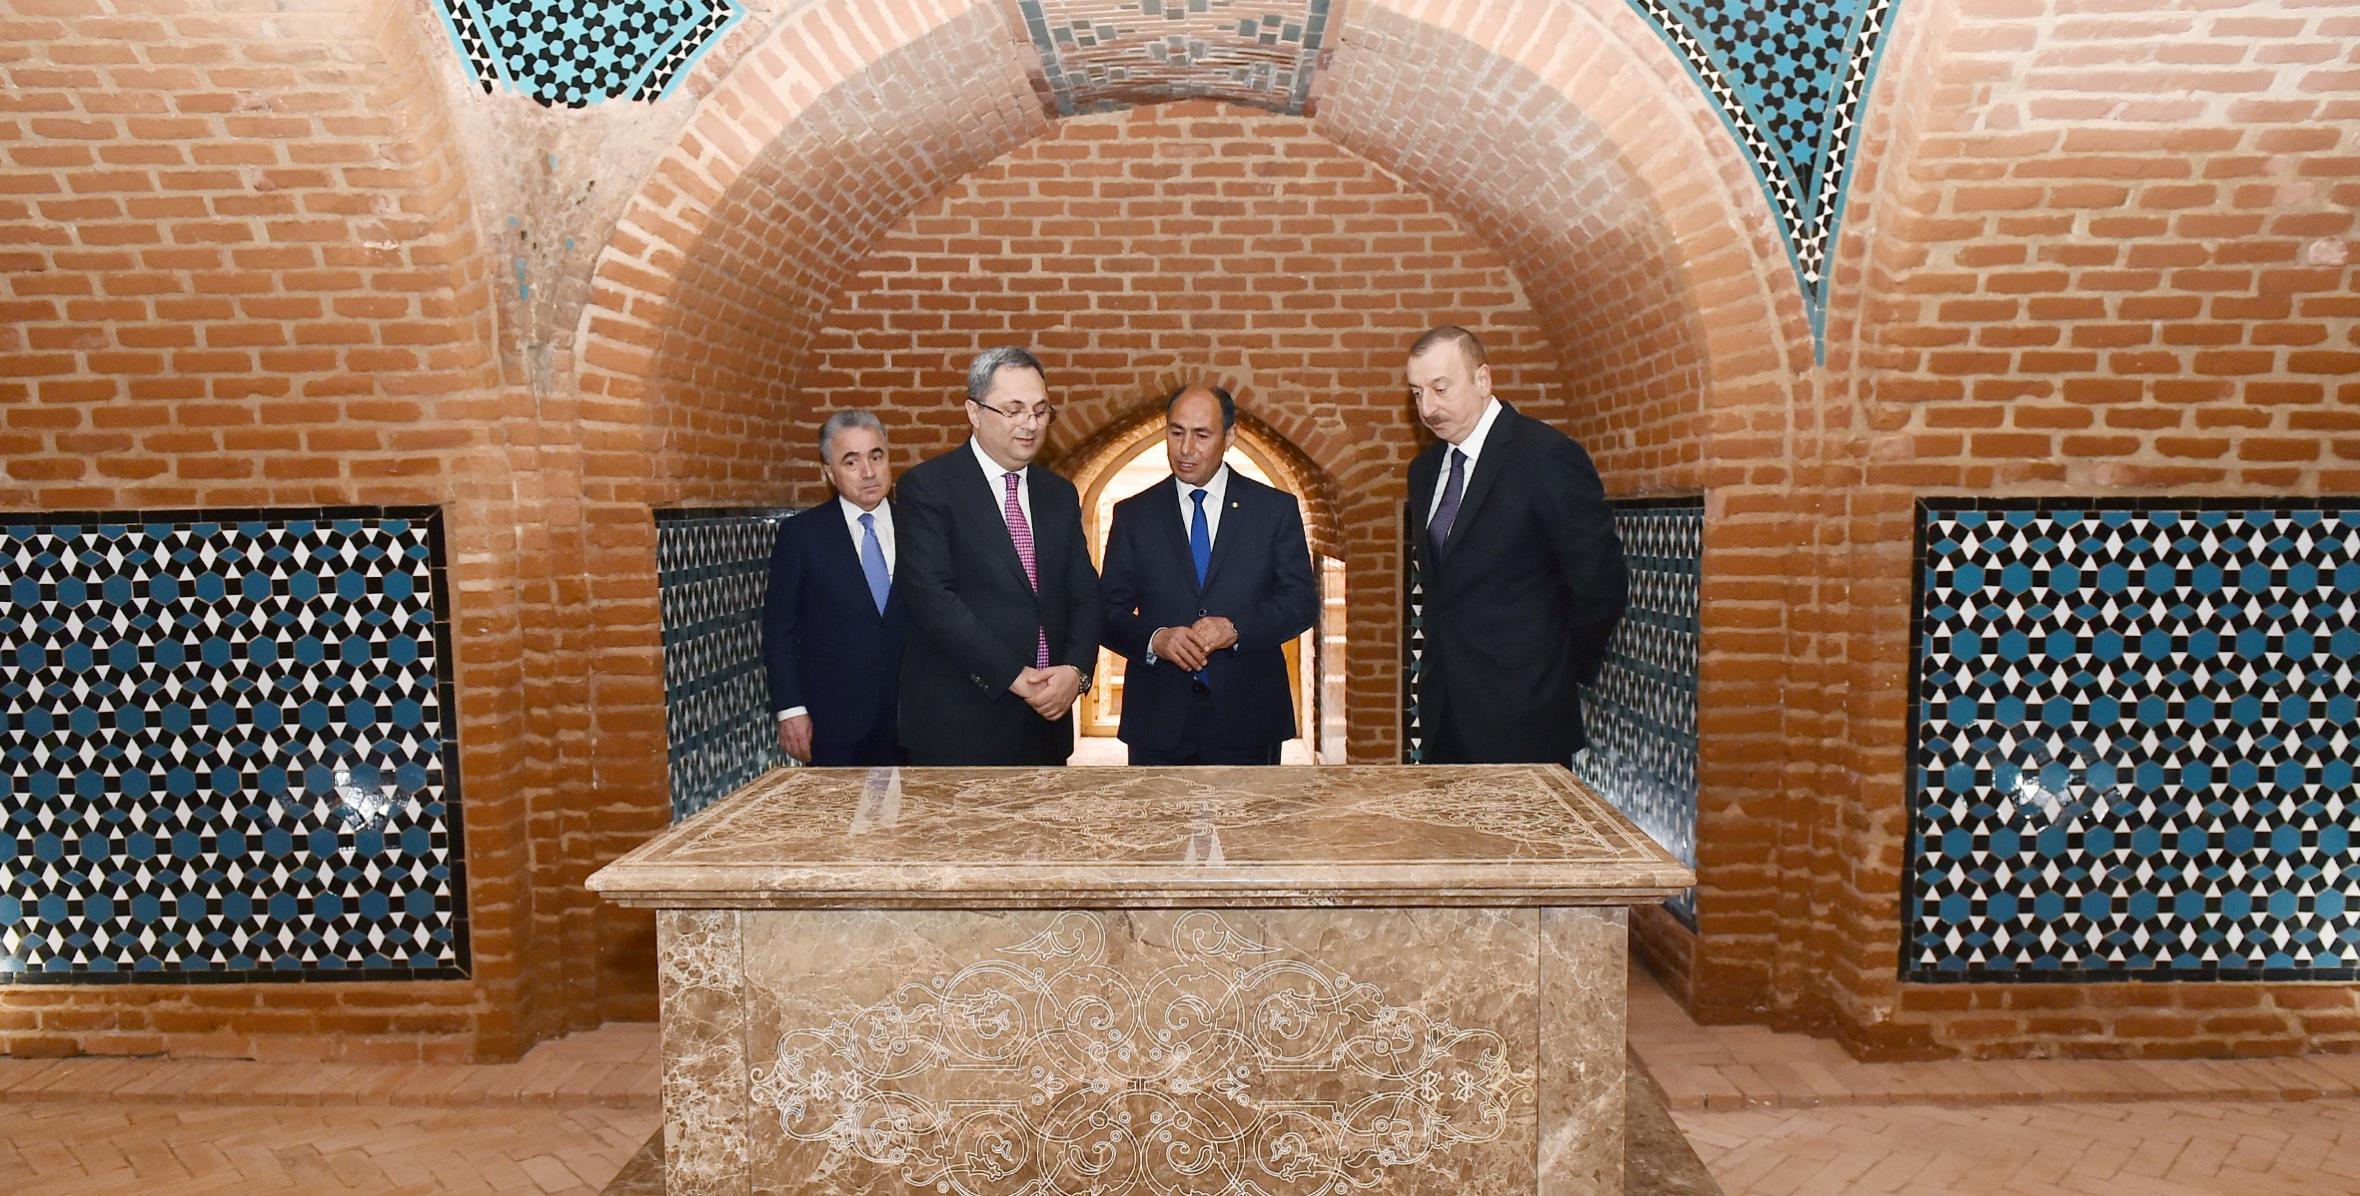 Ильхам Алиев ознакомился с Бардинской гробницей и комплексом Торпаггала после капитальной реконструкции